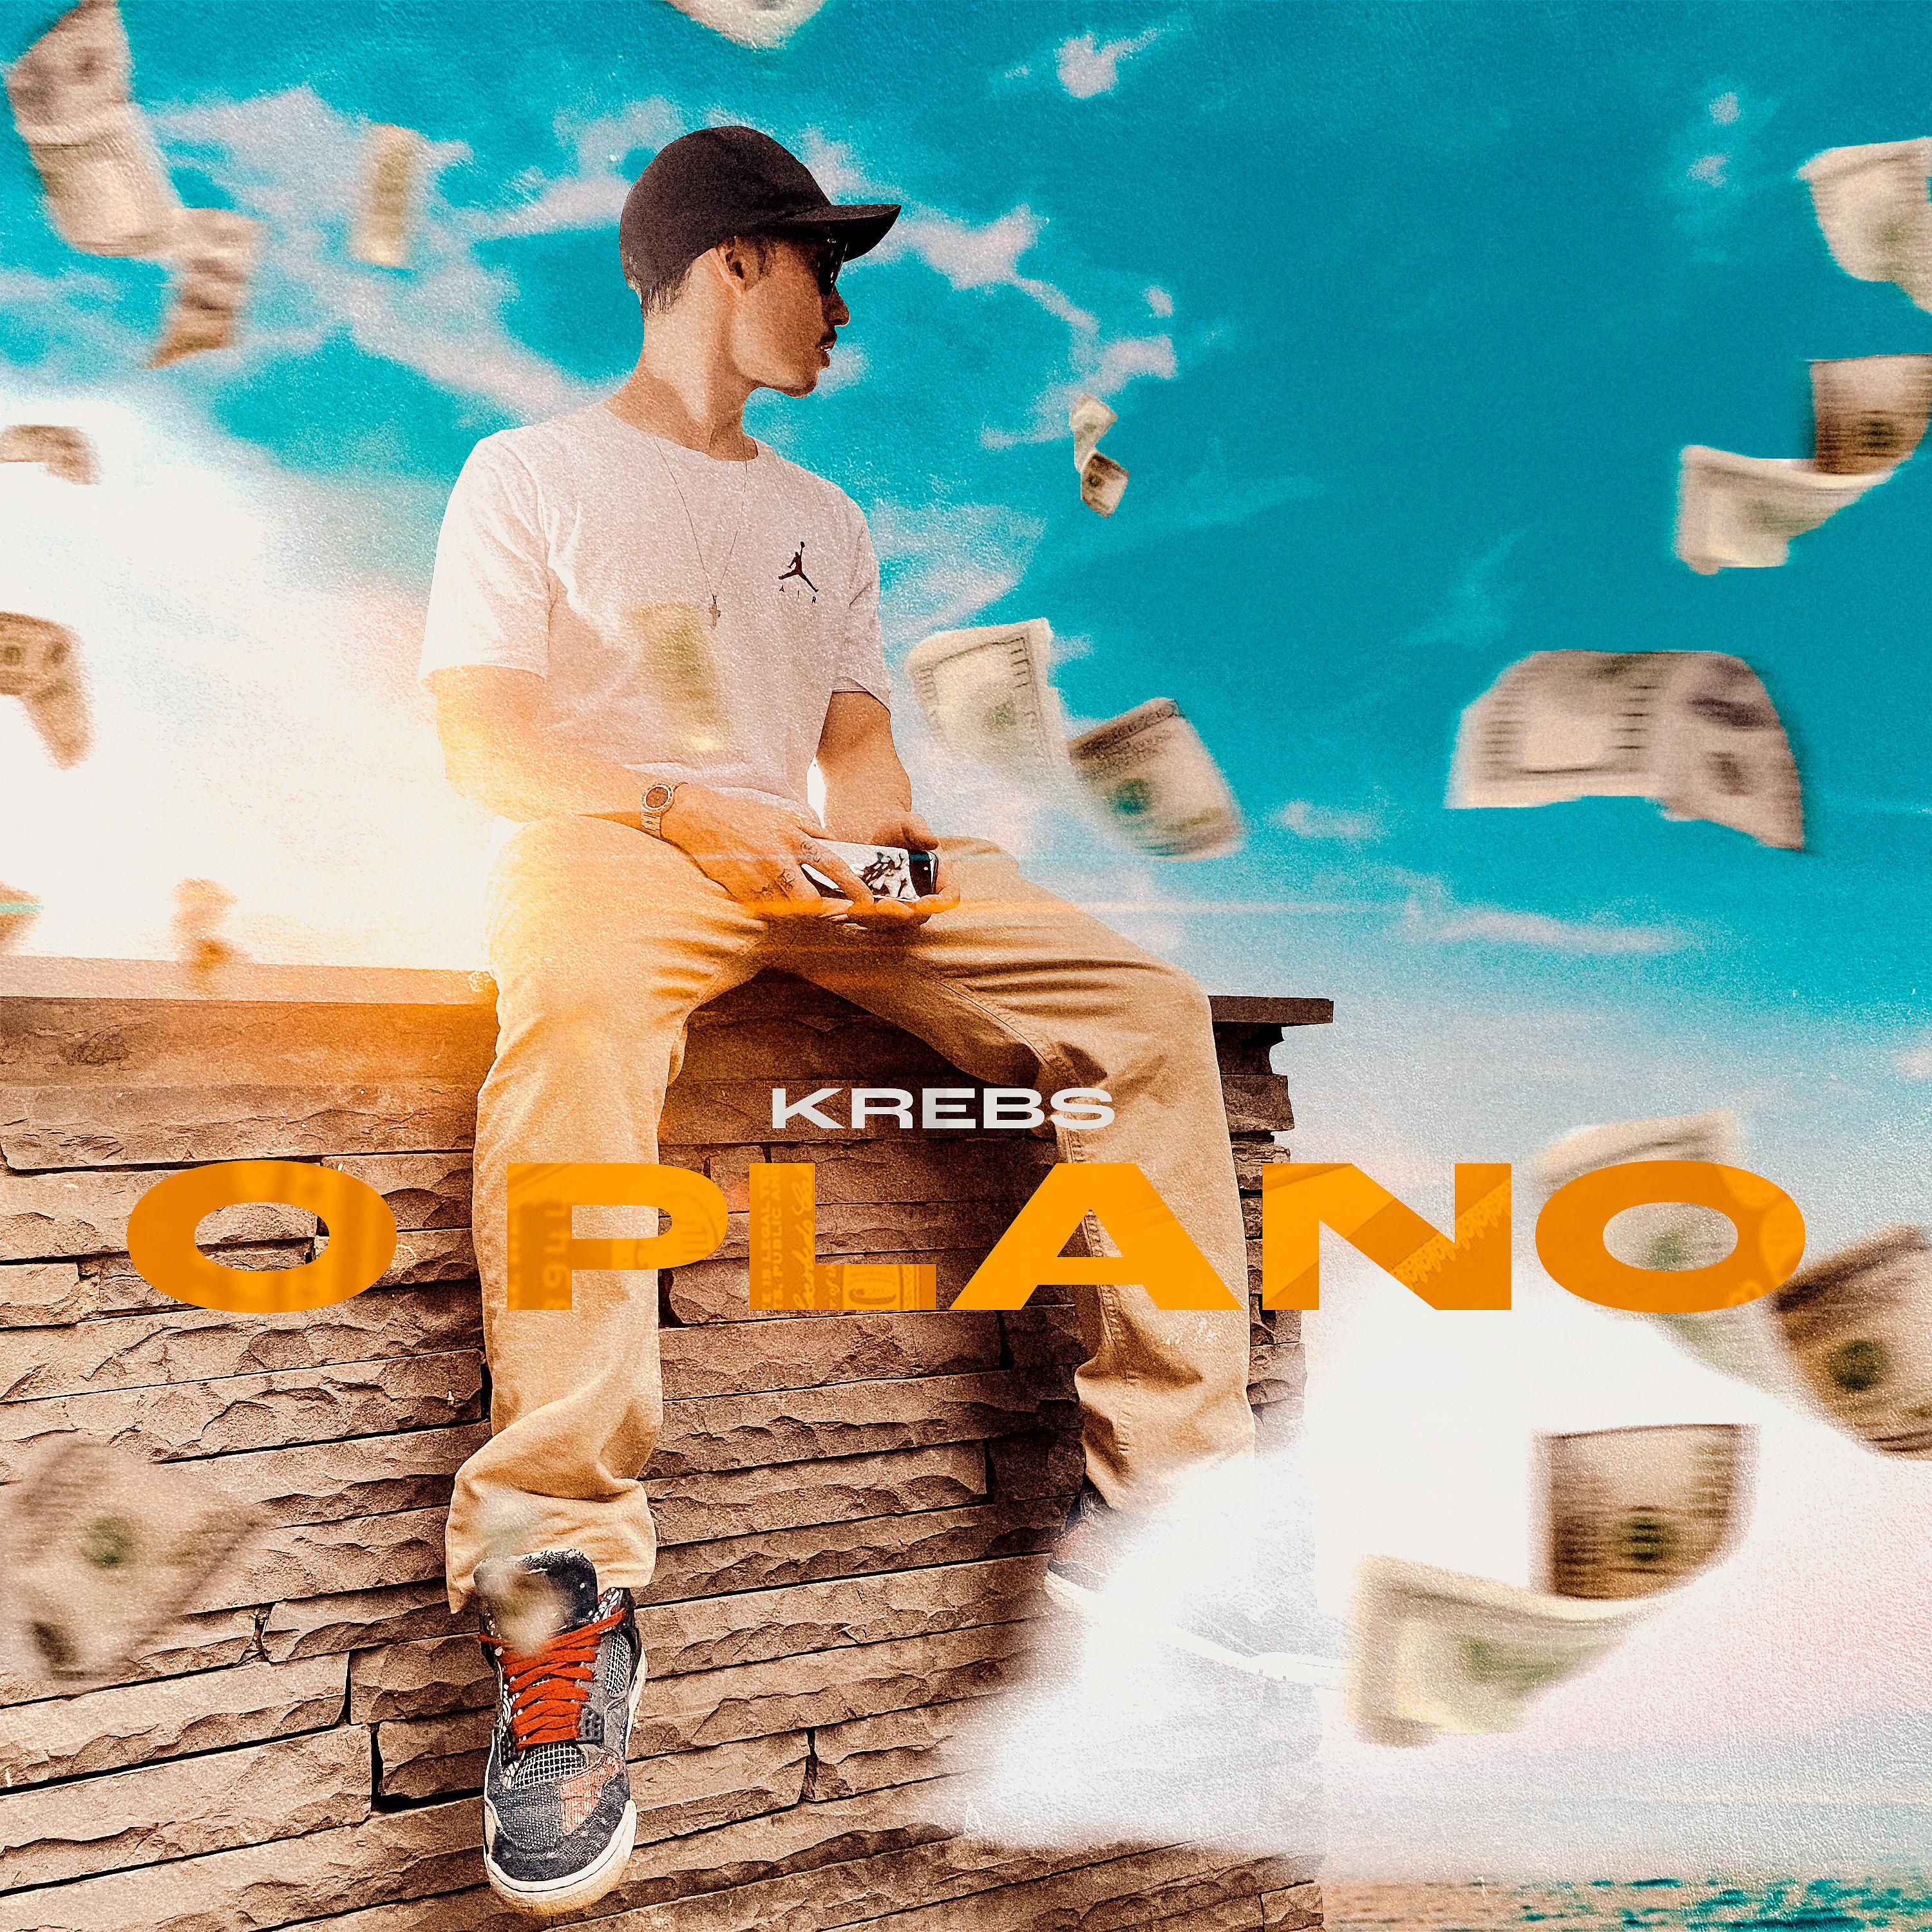 Постер альбома O Plano